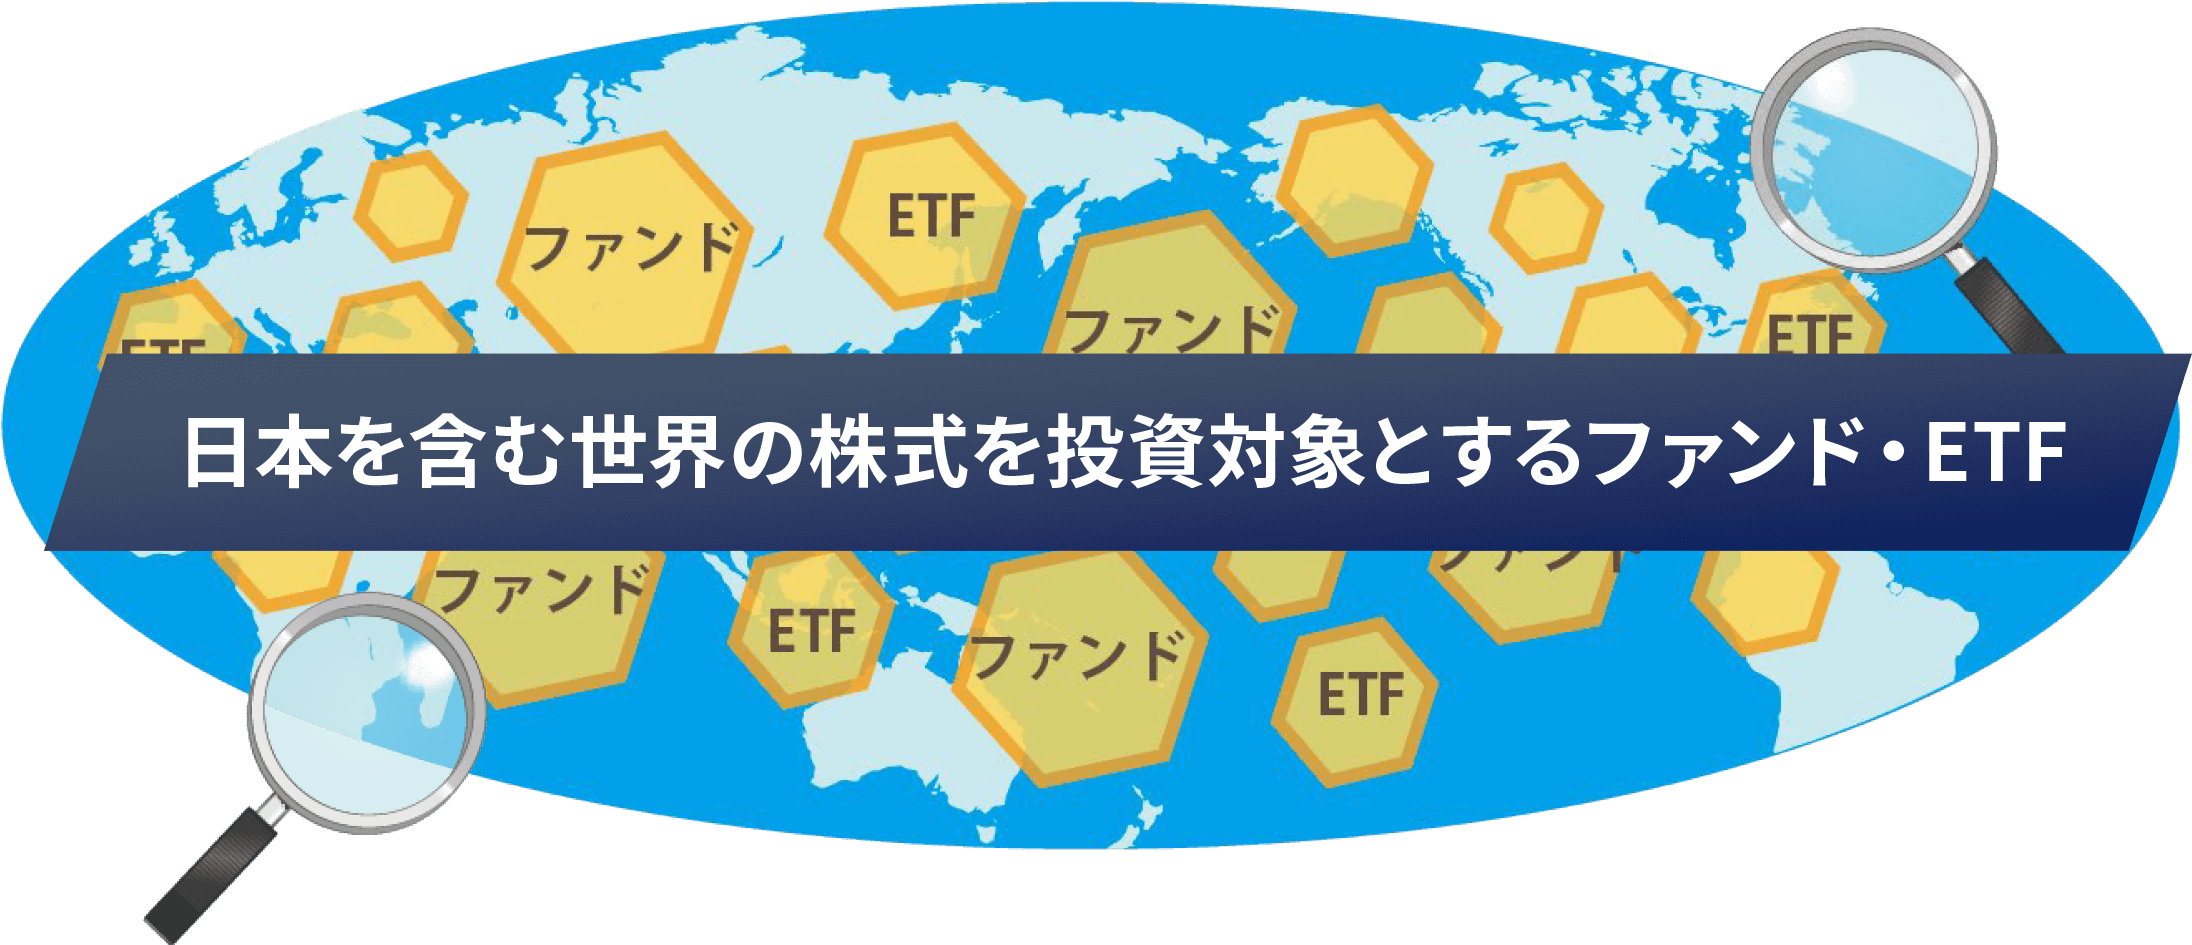 日本を含む世界の株式を投資対象とするファンド・ETFのイメージイラスト